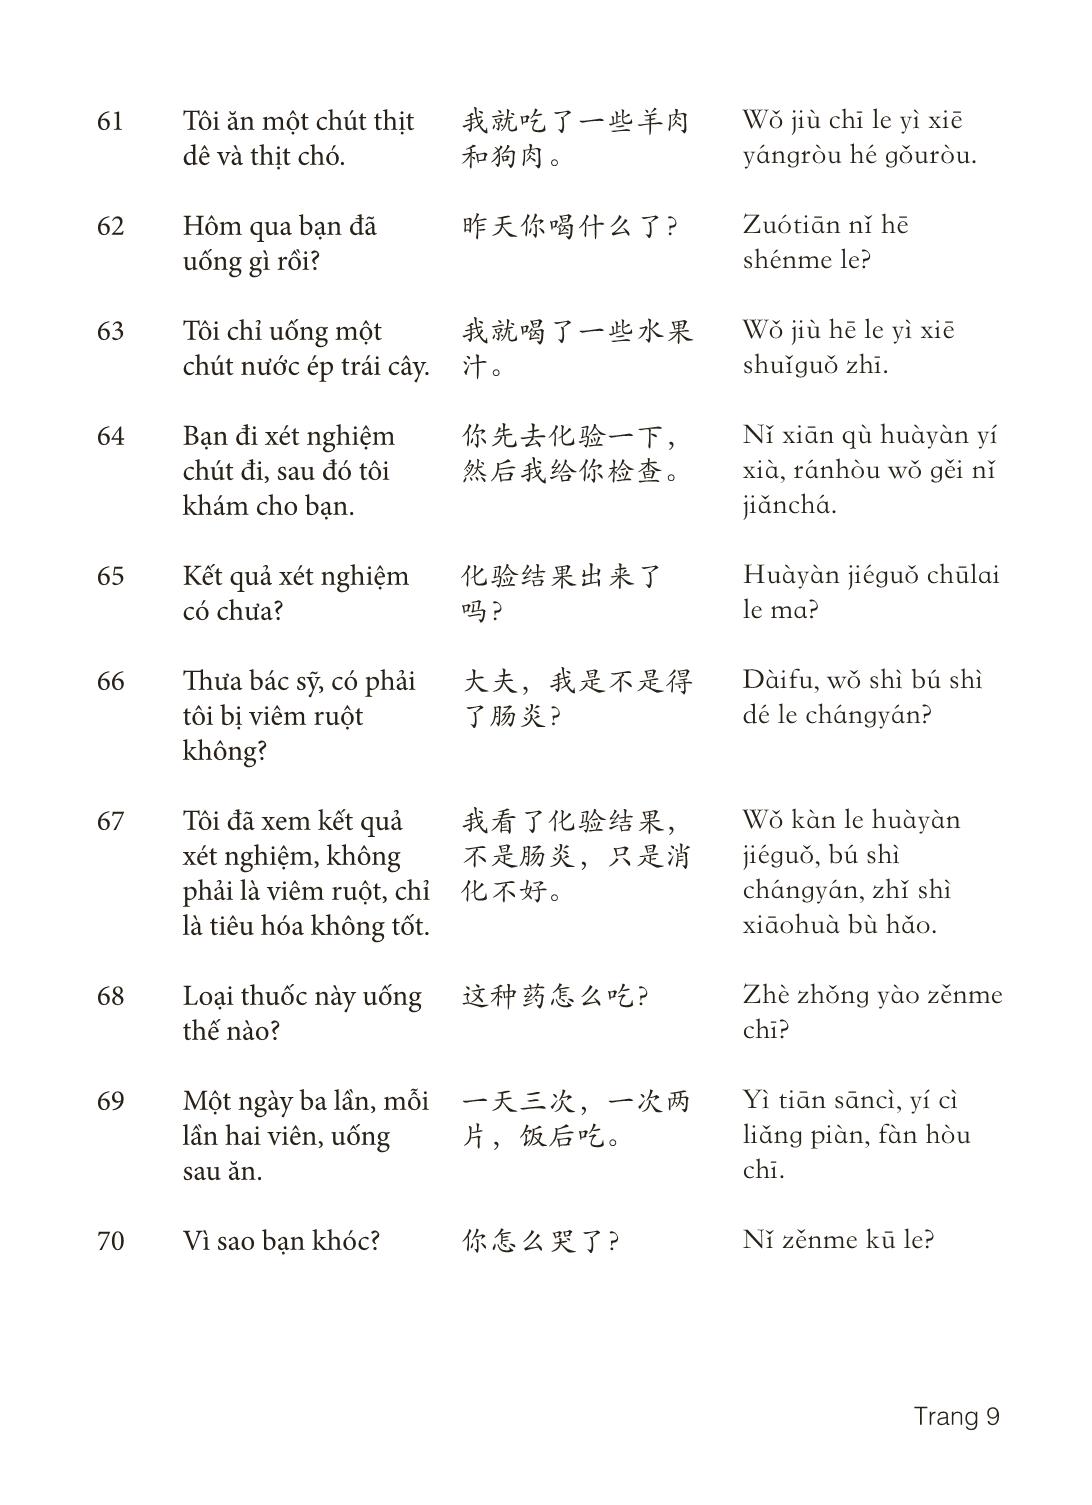 3000 Câu đàm thoại tiếng Hoa - Phần 10 trang 9